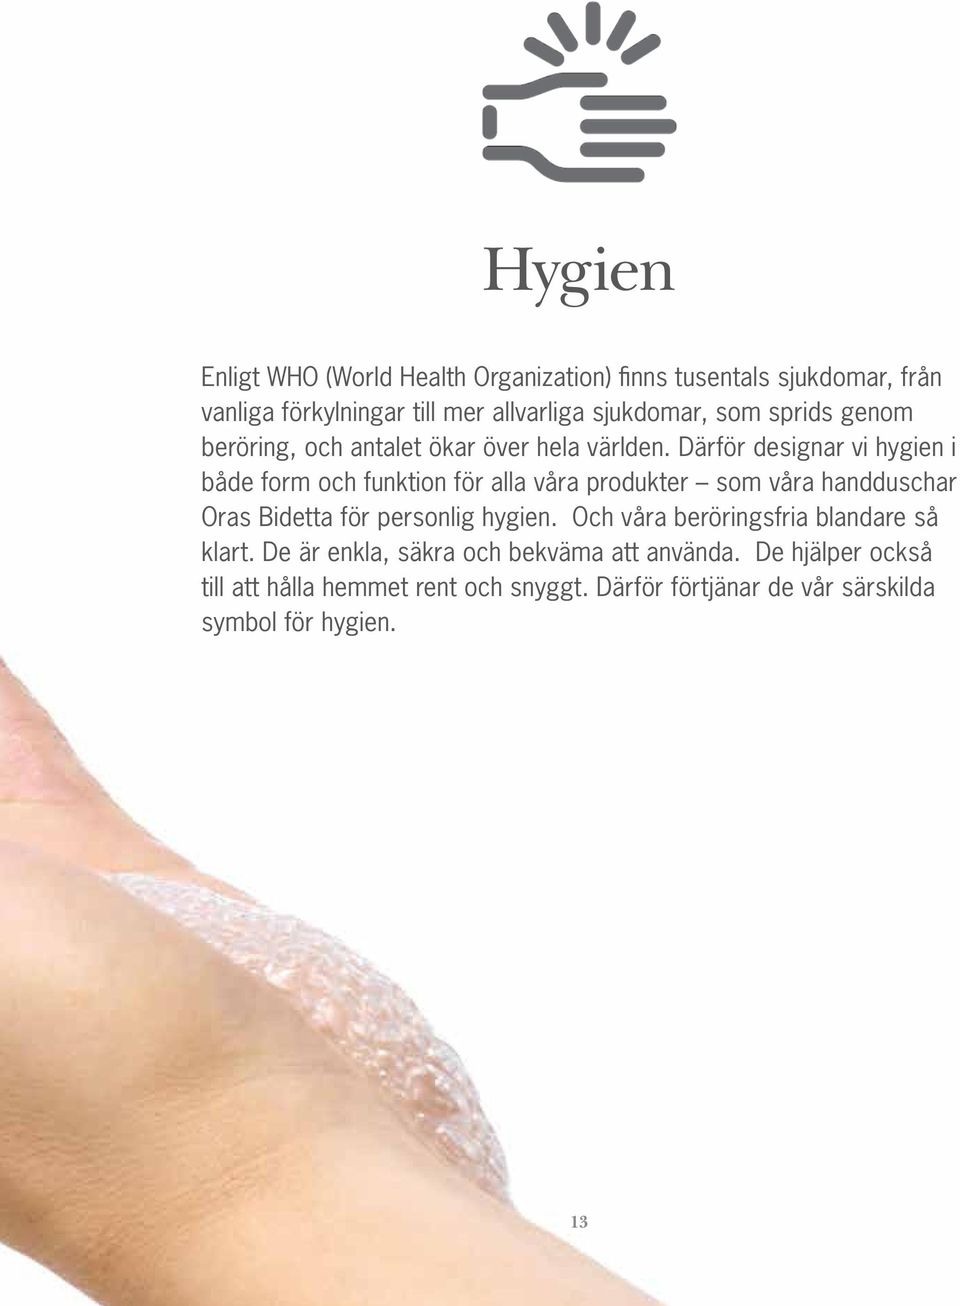 Därför designar vi hygien i både form och funktion för alla våra produkter som våra handduschar Oras Bidetta för personlig hygien.